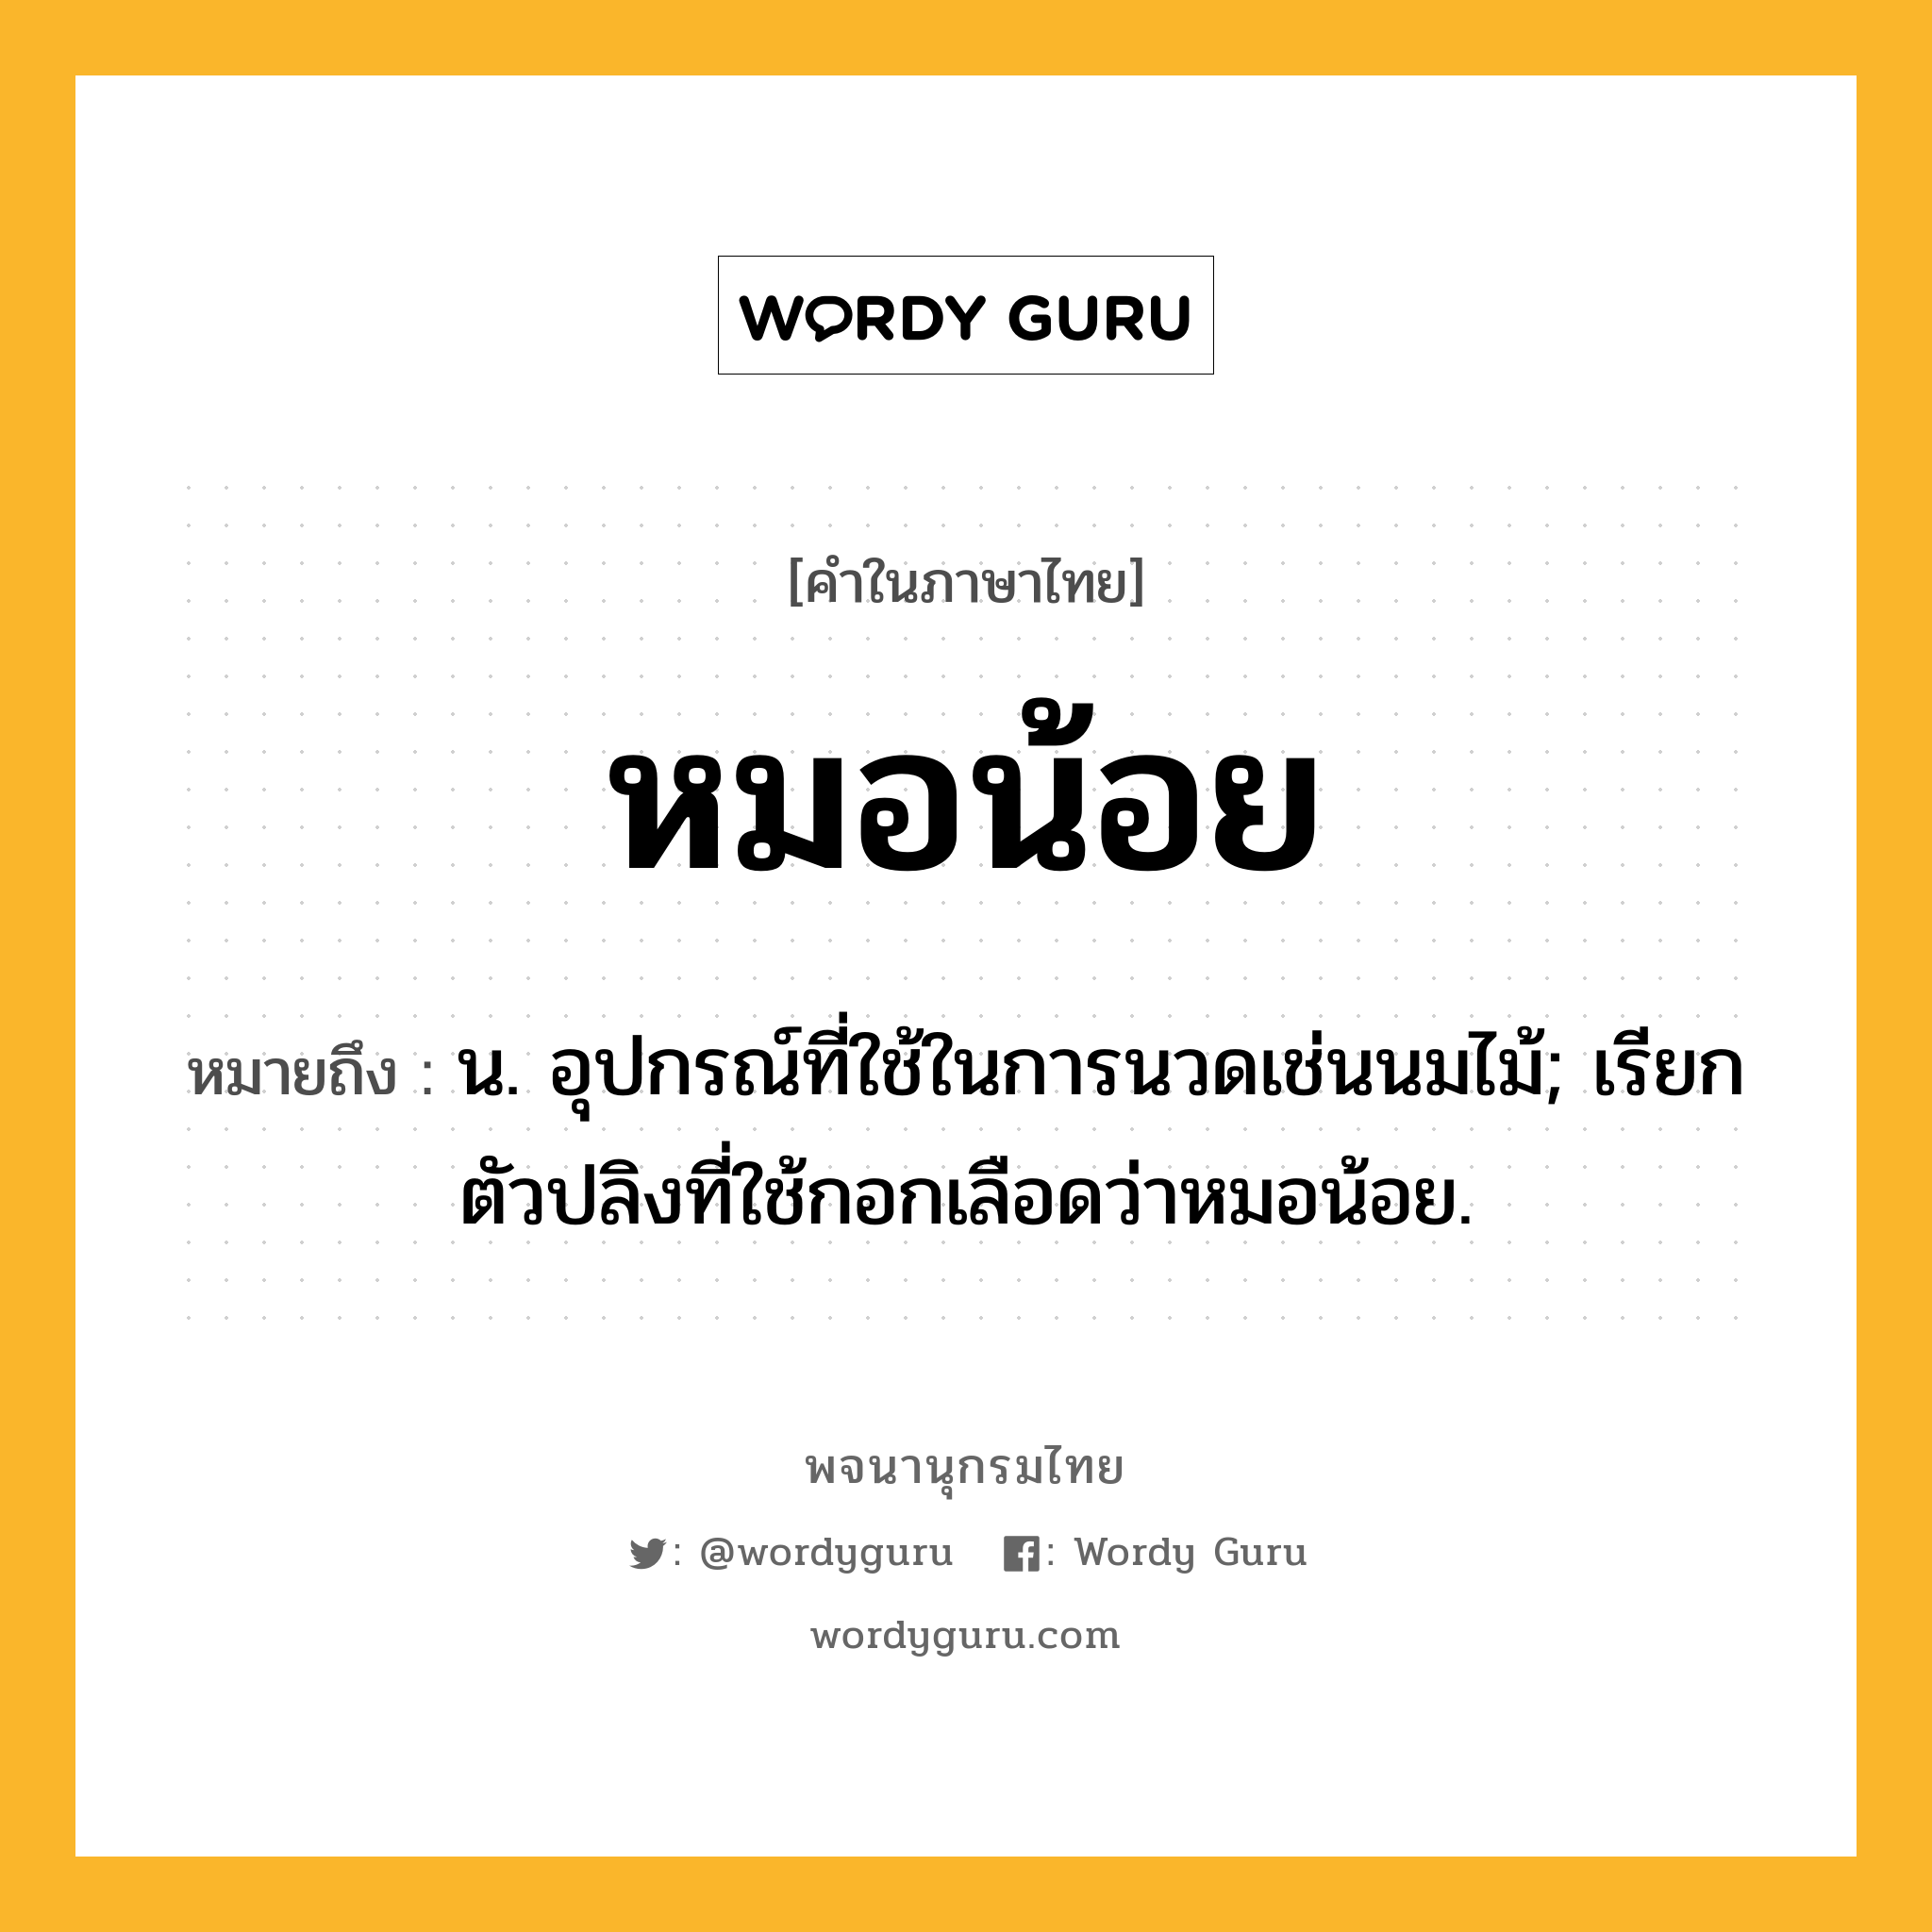 หมอน้อย ความหมาย หมายถึงอะไร?, คำในภาษาไทย หมอน้อย หมายถึง น. อุปกรณ์ที่ใช้ในการนวดเช่นนมไม้; เรียกตัวปลิงที่ใช้กอกเลือดว่าหมอน้อย.